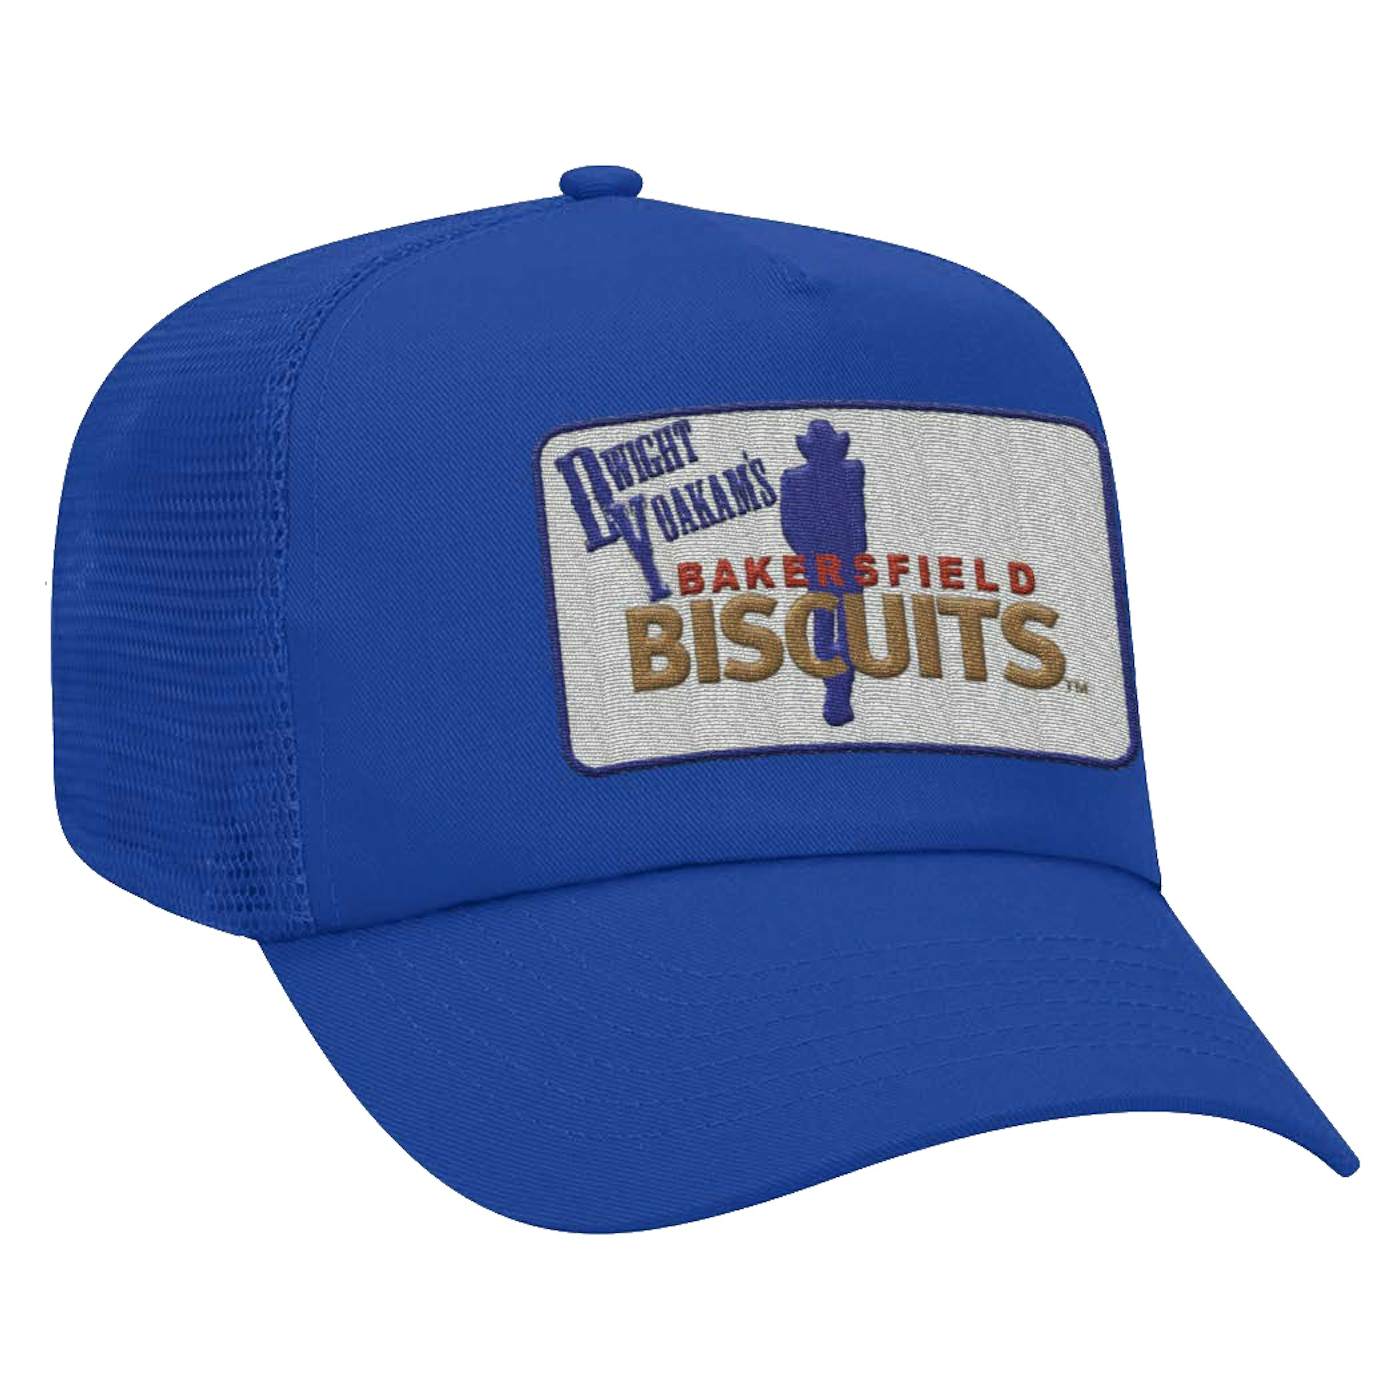 Dwight Yoakam Bakersfield Biscuits Trucker Hat Blue